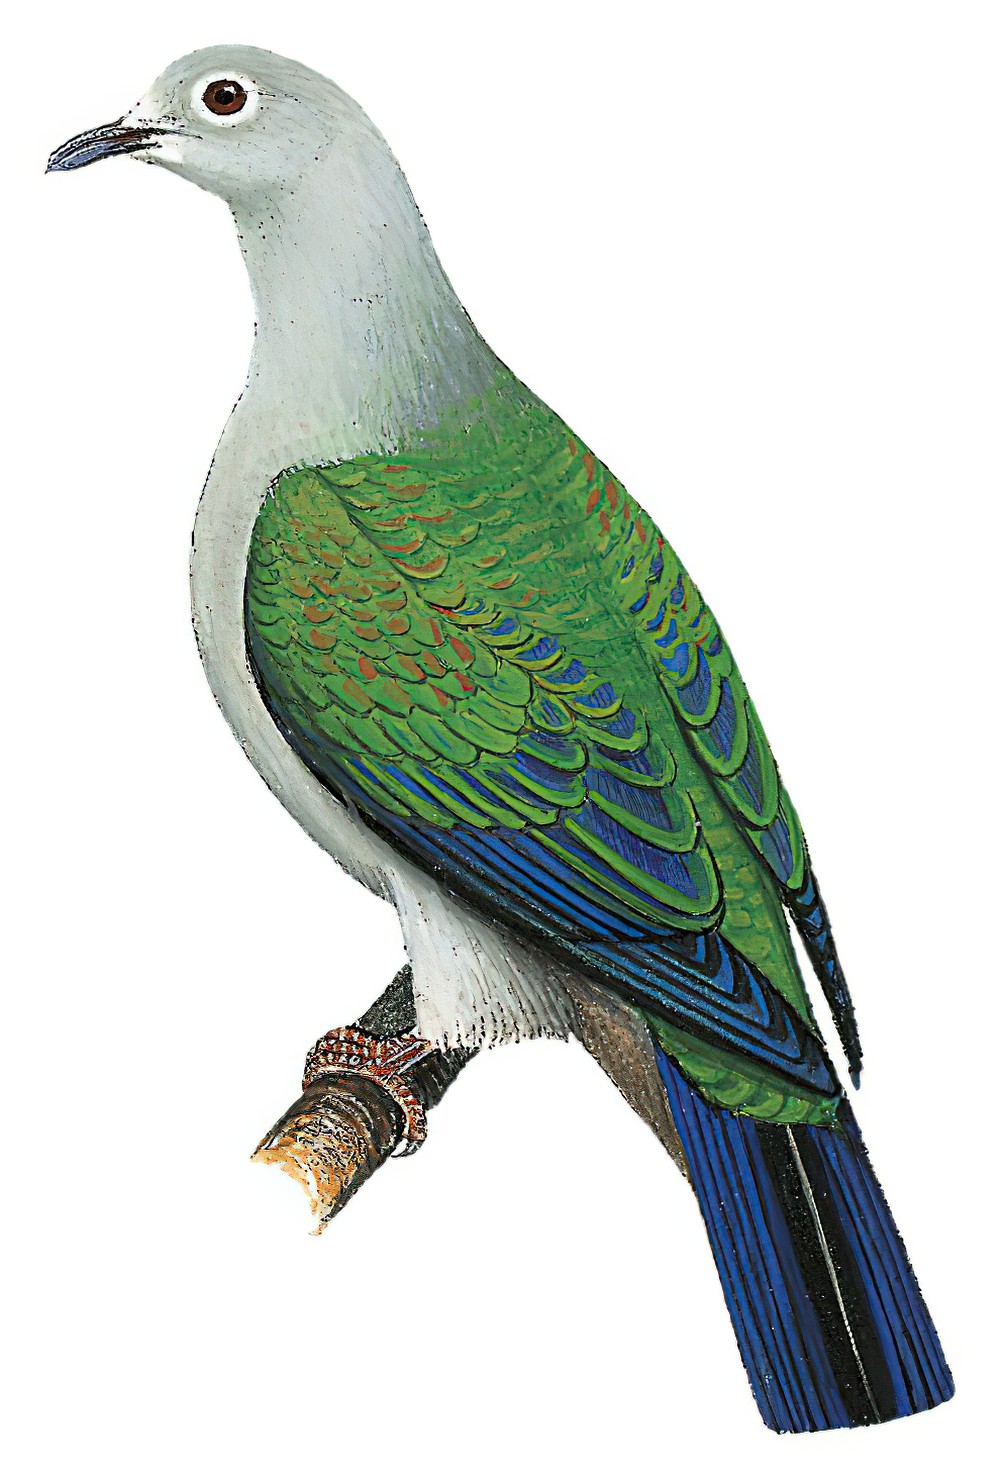 Seram Imperial-Pigeon / Ducula neglecta